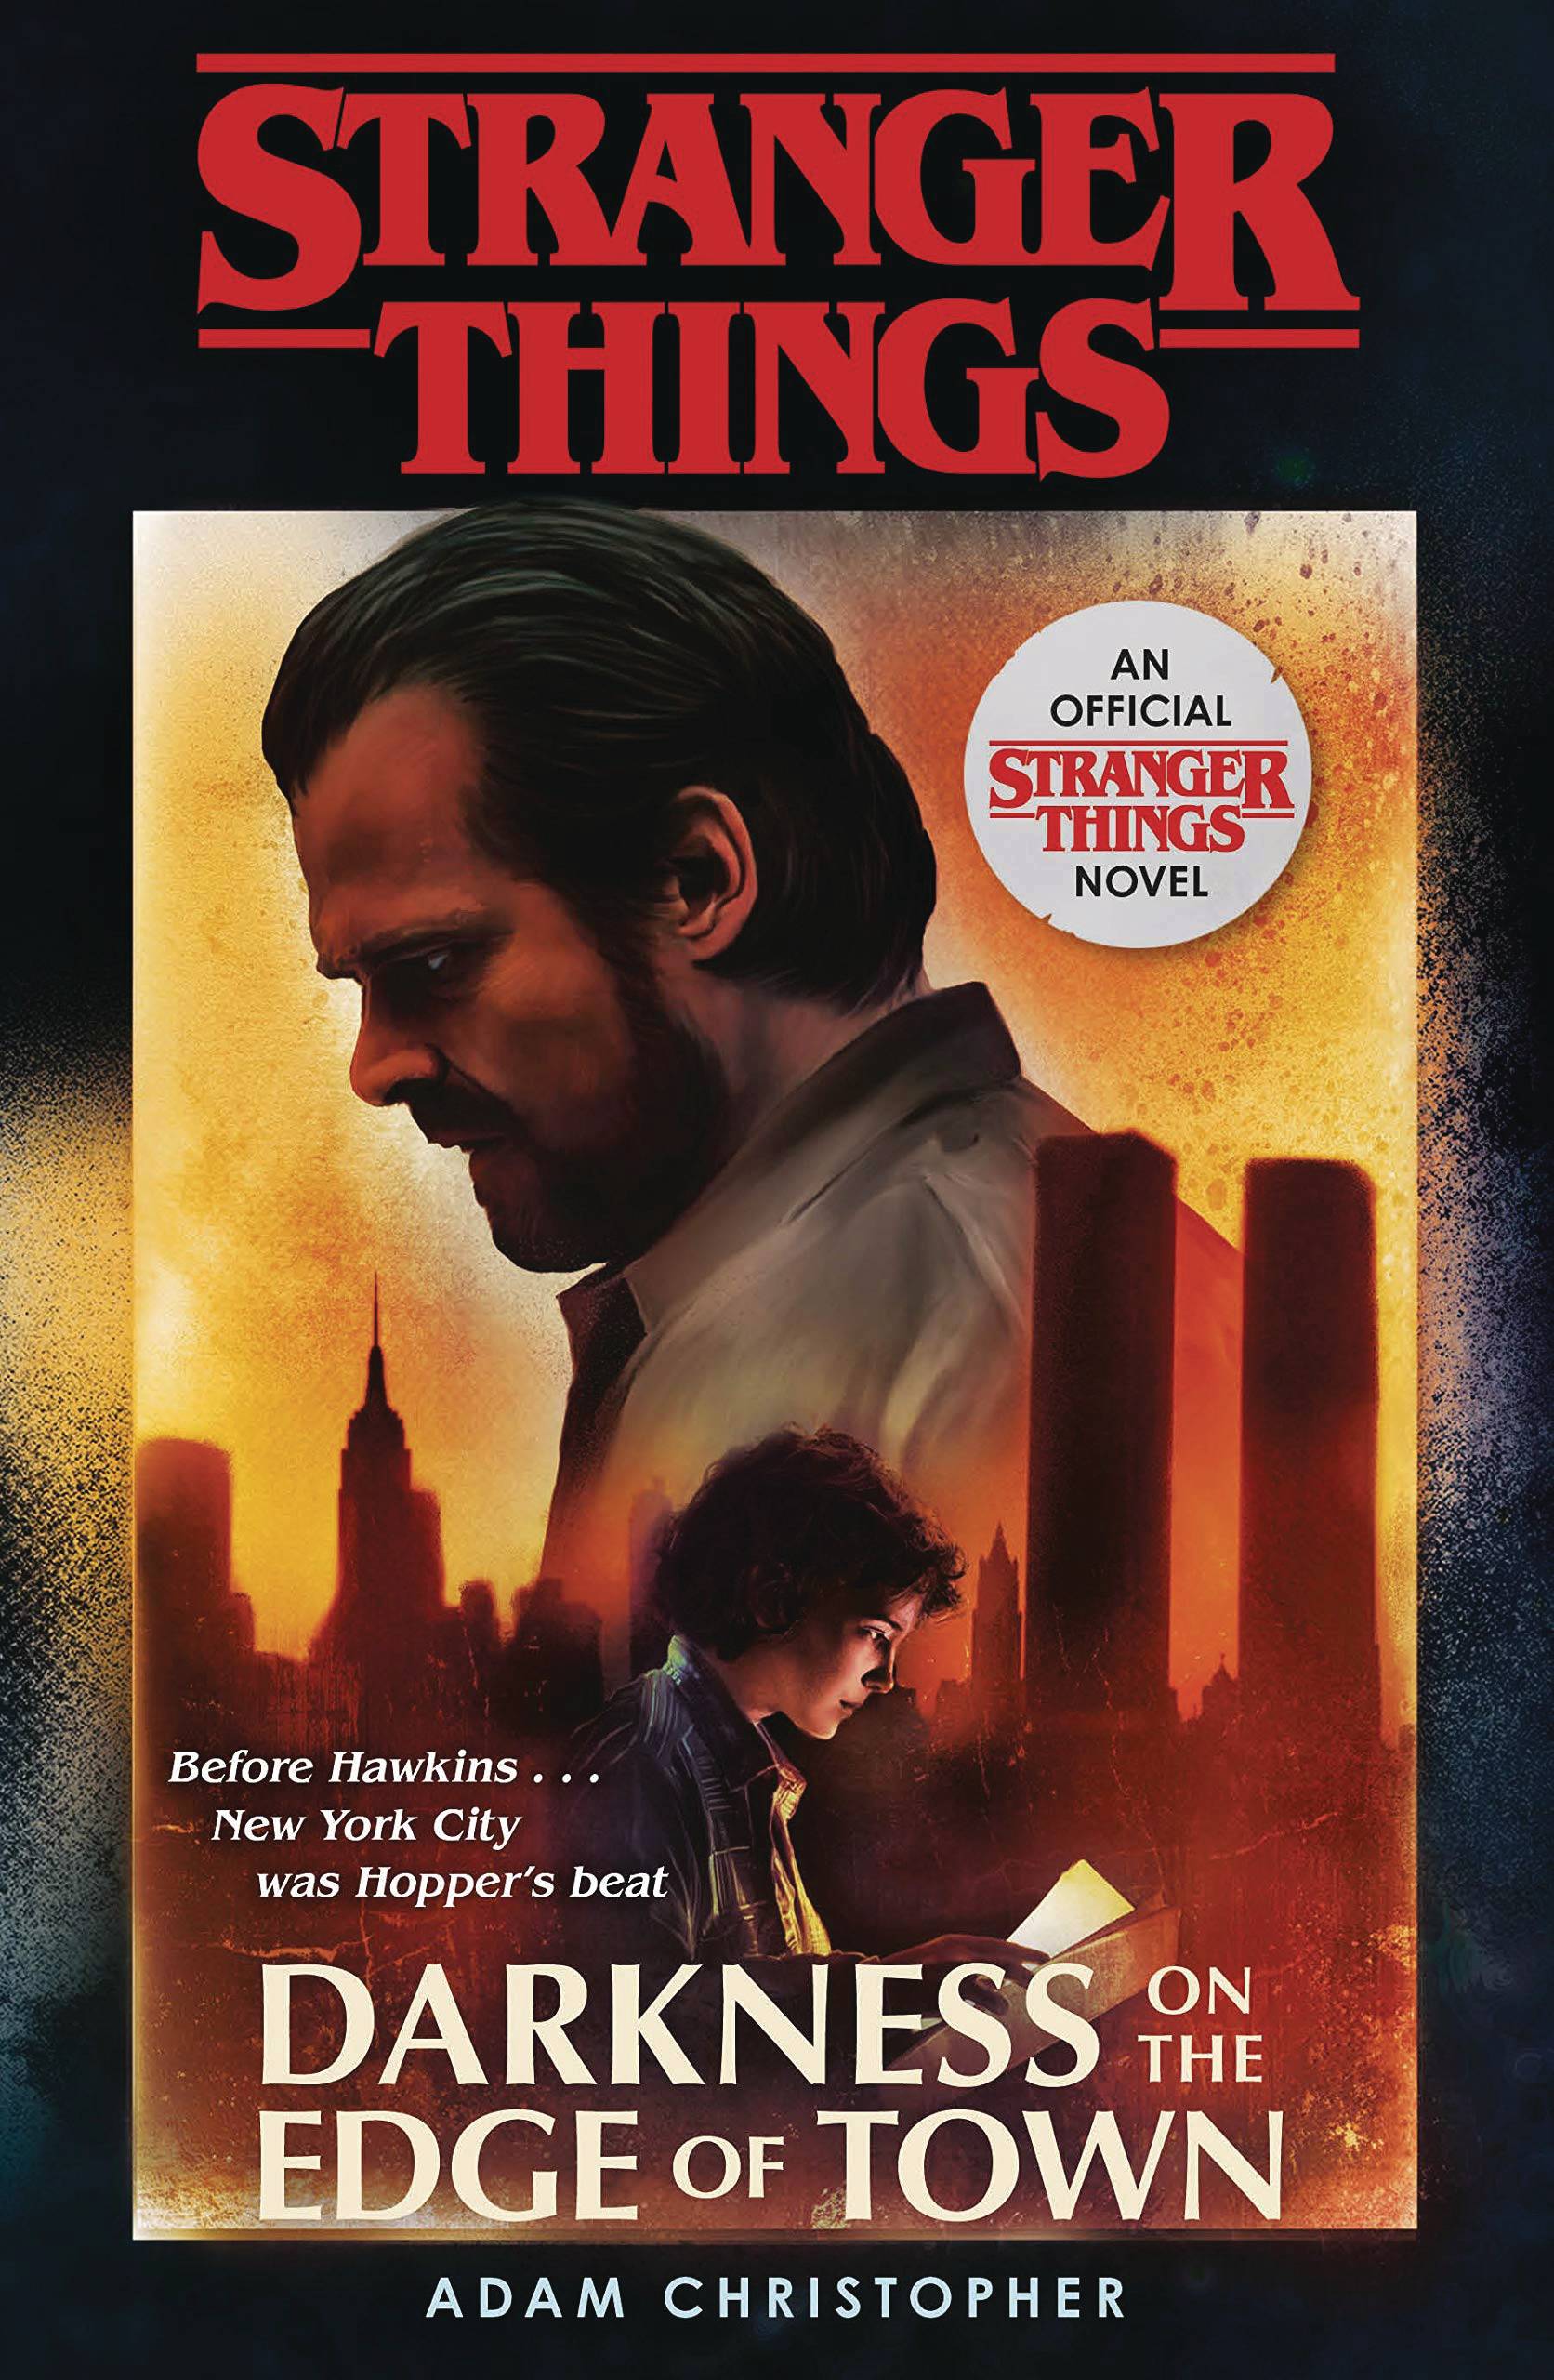 Stranger Things Soft Cover Novel Darkness Edge of Town